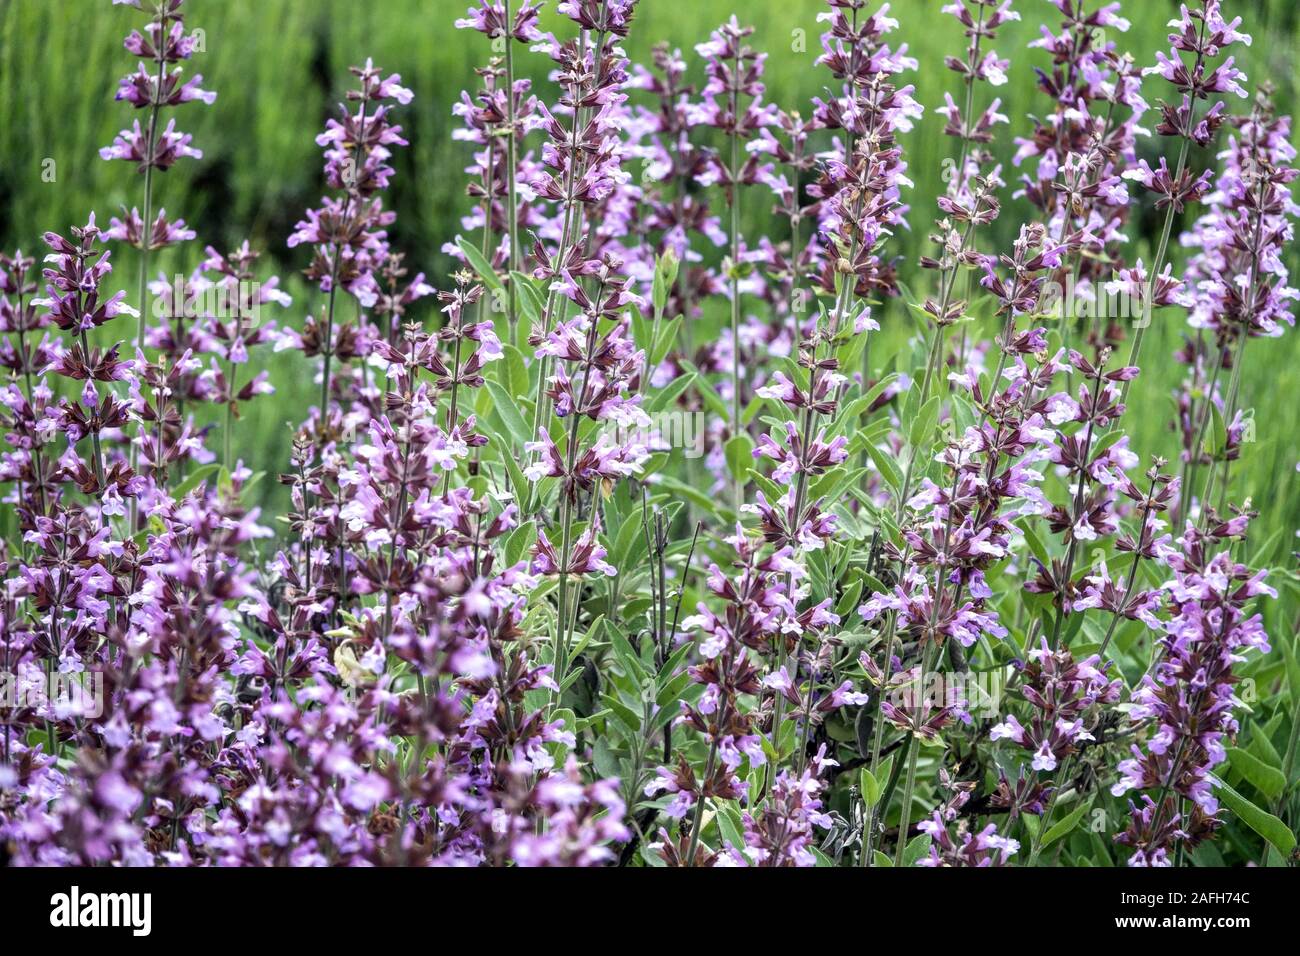 Salvia blancoana Stock Photo